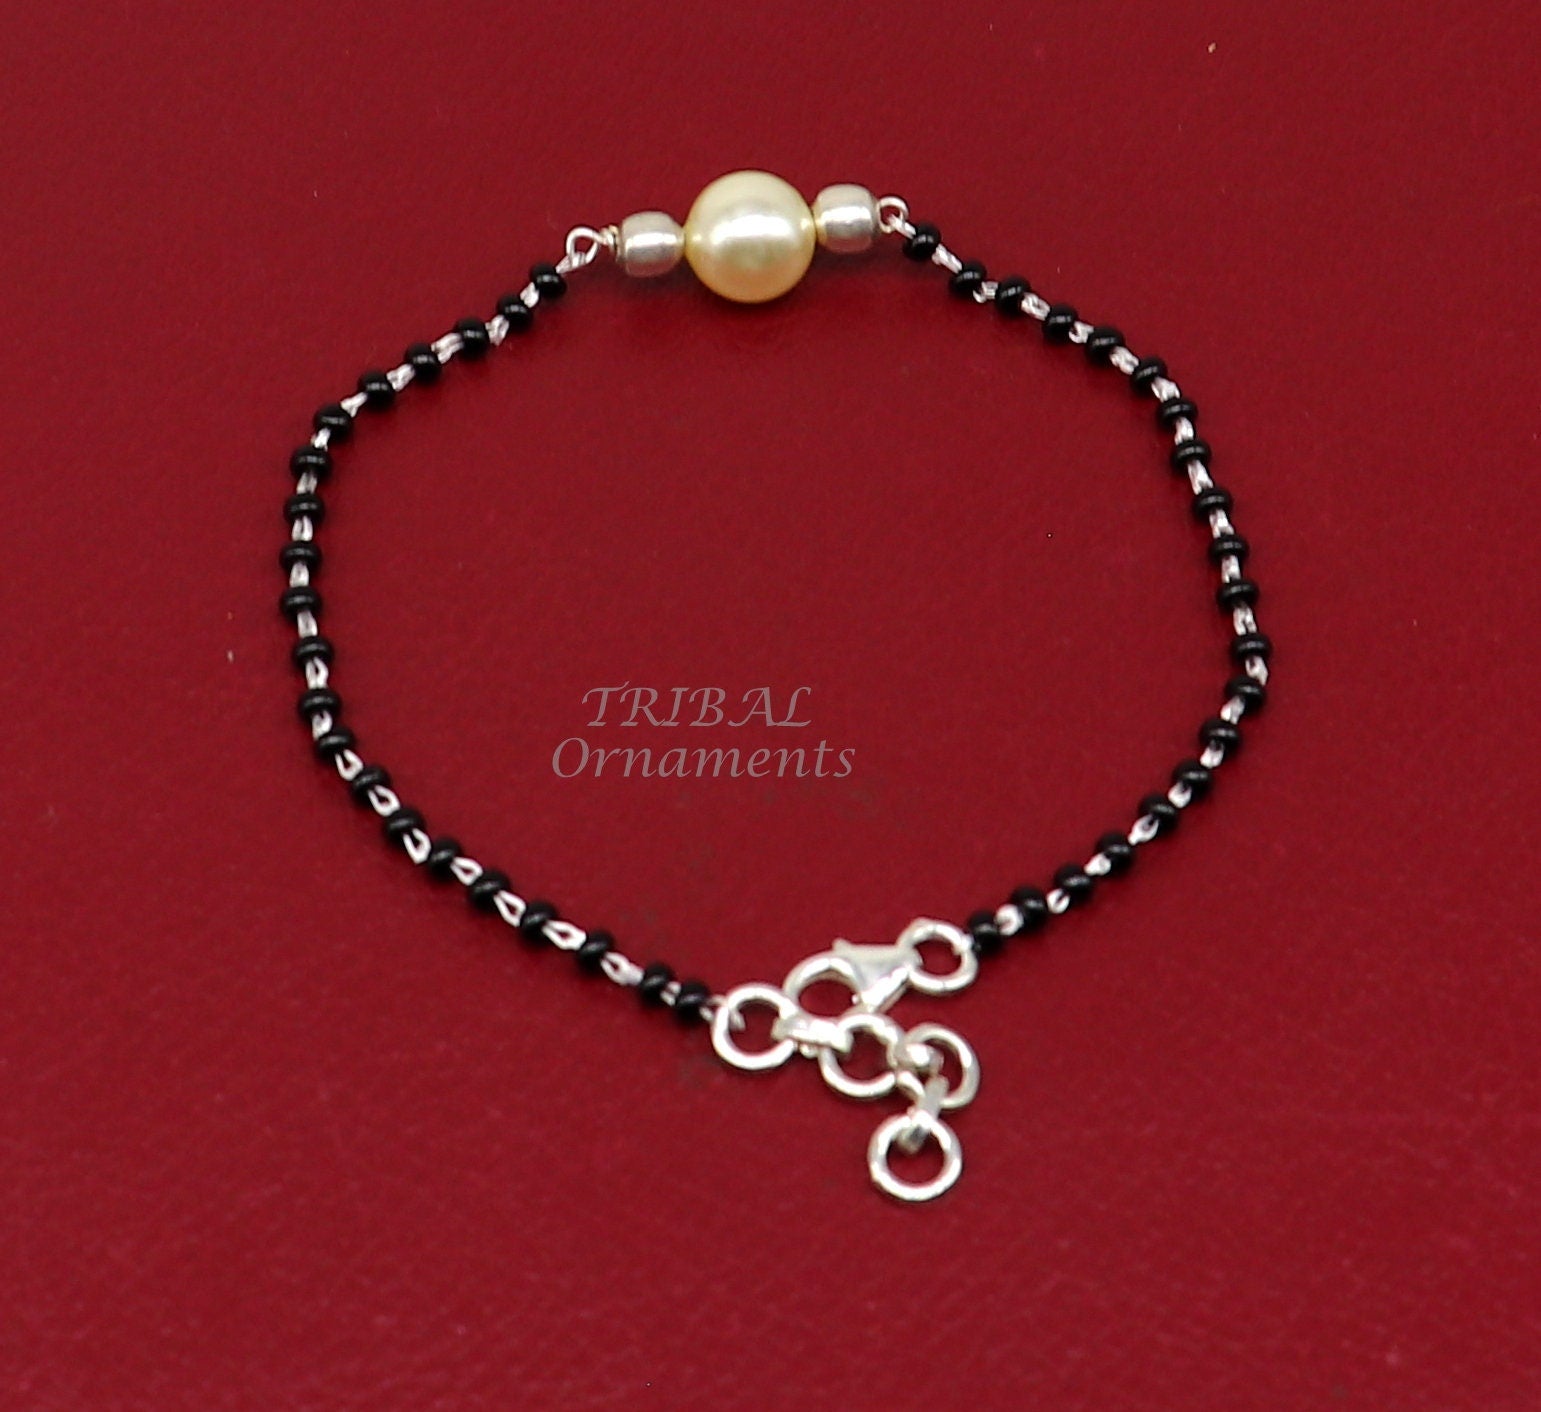 925 sterling silver modern cultural black beaded all sizes bracelet Combo use bracelet or anklets, best Mangalsutra bracelet sbr454 - TRIBAL ORNAMENTS